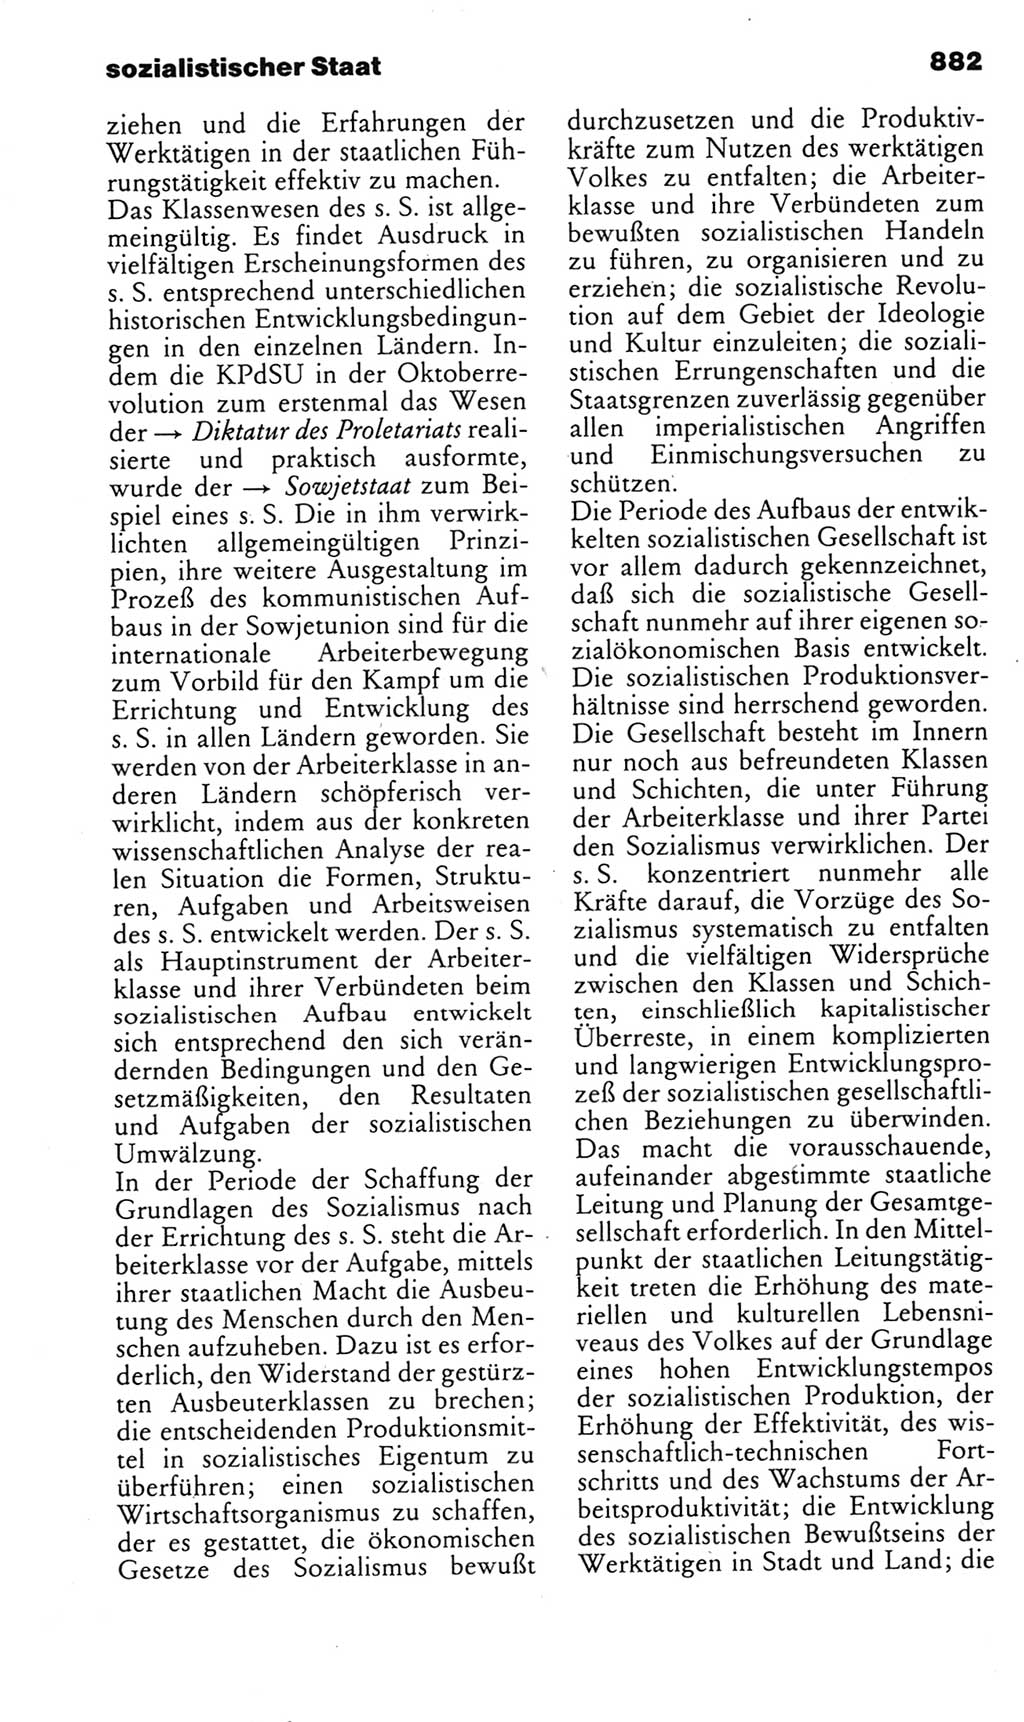 Kleines politisches Wörterbuch [Deutsche Demokratische Republik (DDR)] 1985, Seite 882 (Kl. pol. Wb. DDR 1985, S. 882)